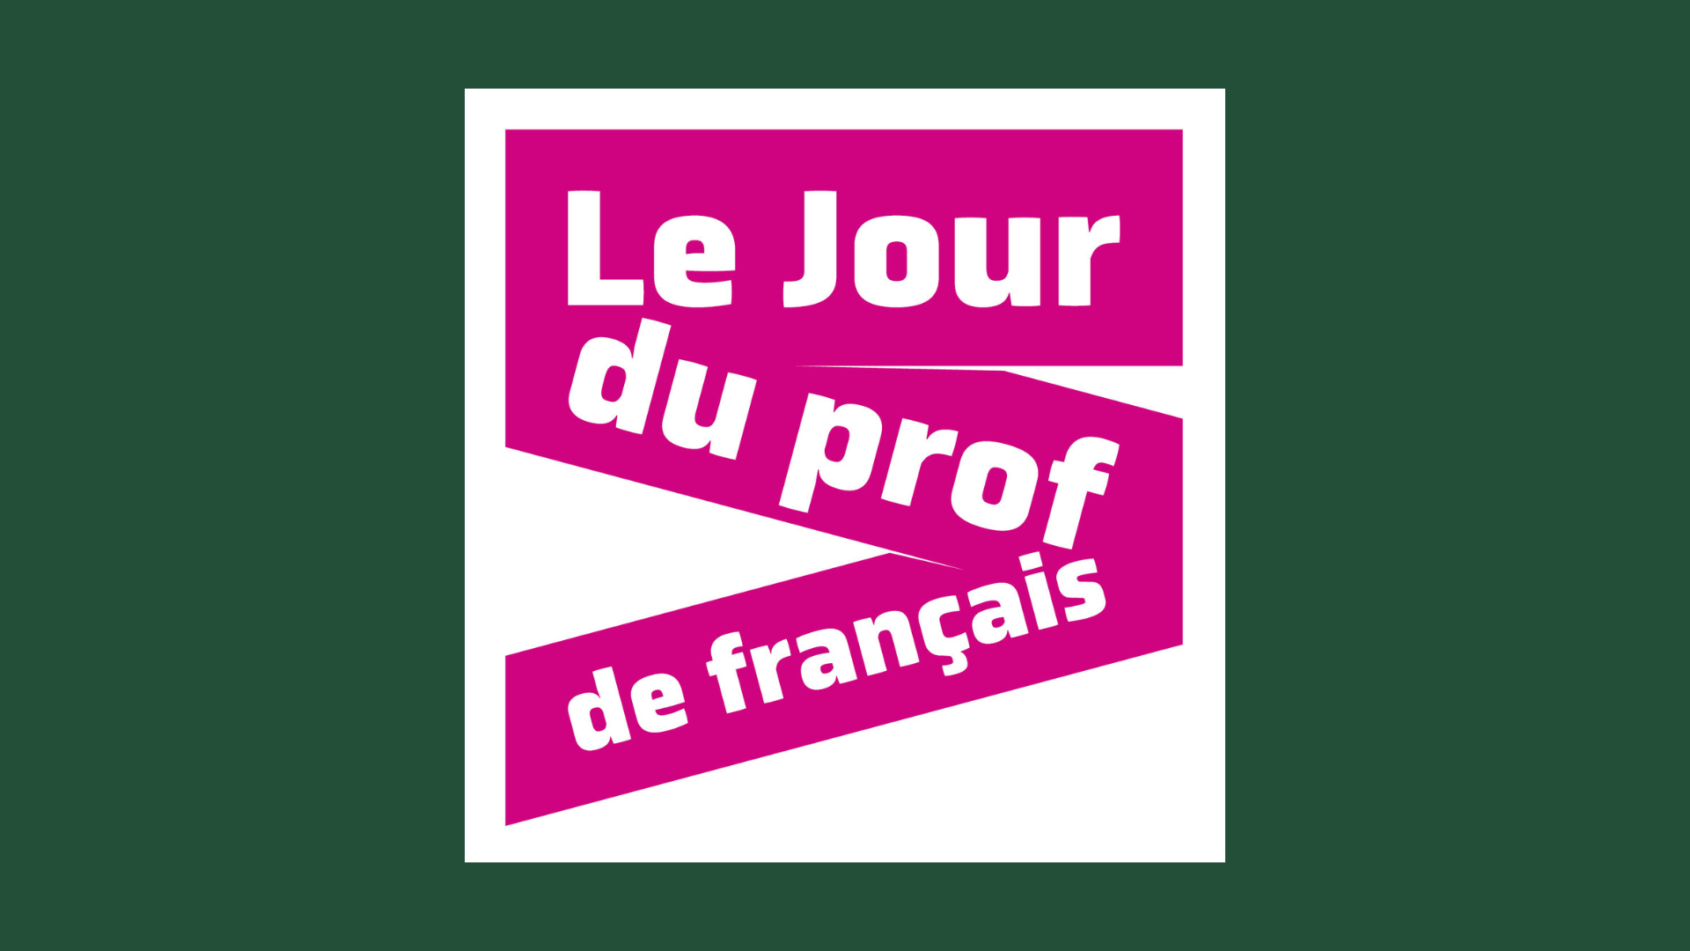 Medzinárodný deň učiteľov francúzštiny… s Adrienom Payetom!